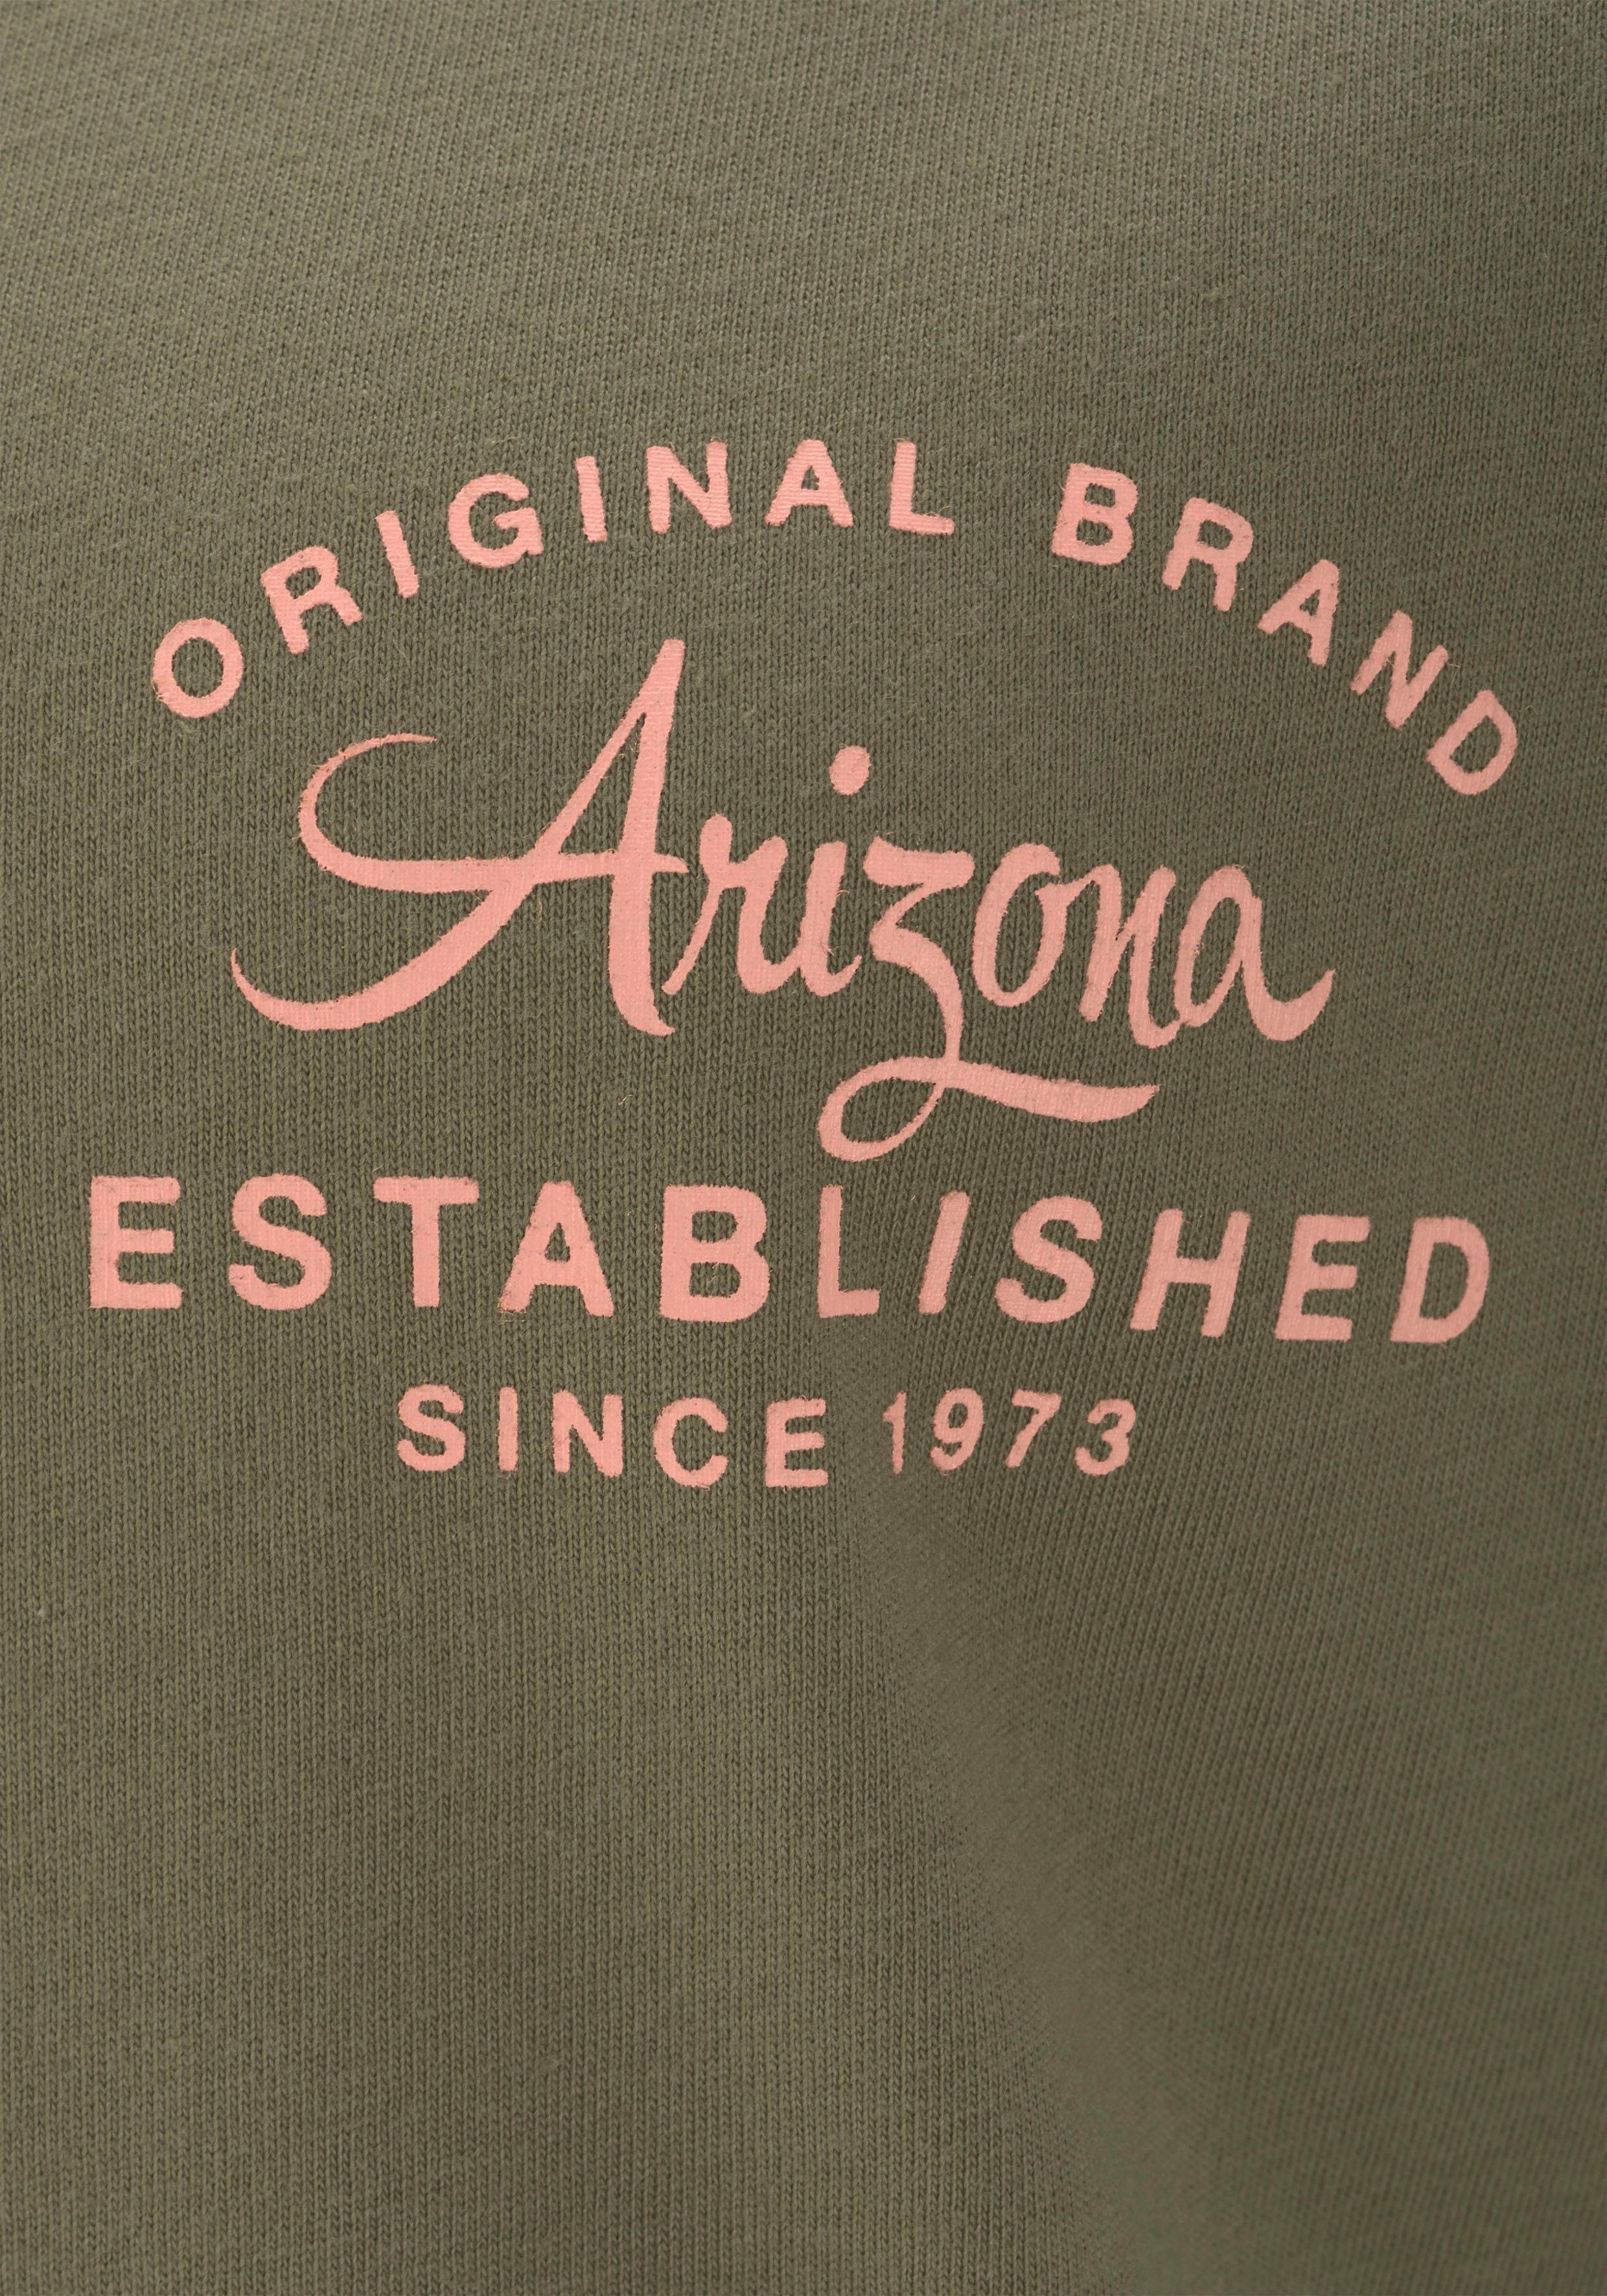 Nachthemd Raglanärmeln Arizona mit grün-apricot